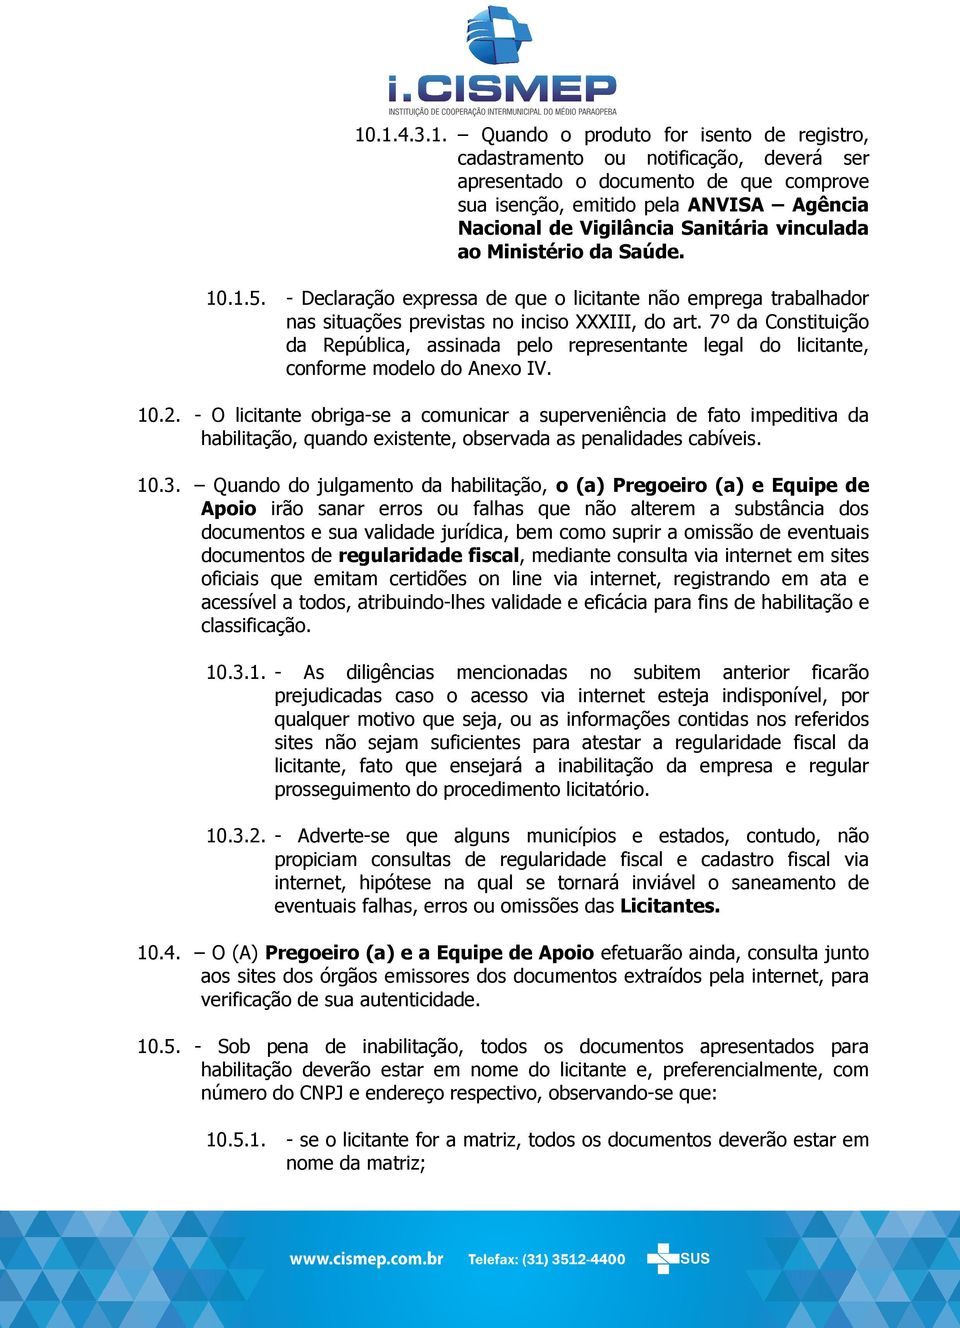 7º da Constituição da República, assinada pelo representante legal do licitante, conforme modelo do Anexo IV. 10.2.